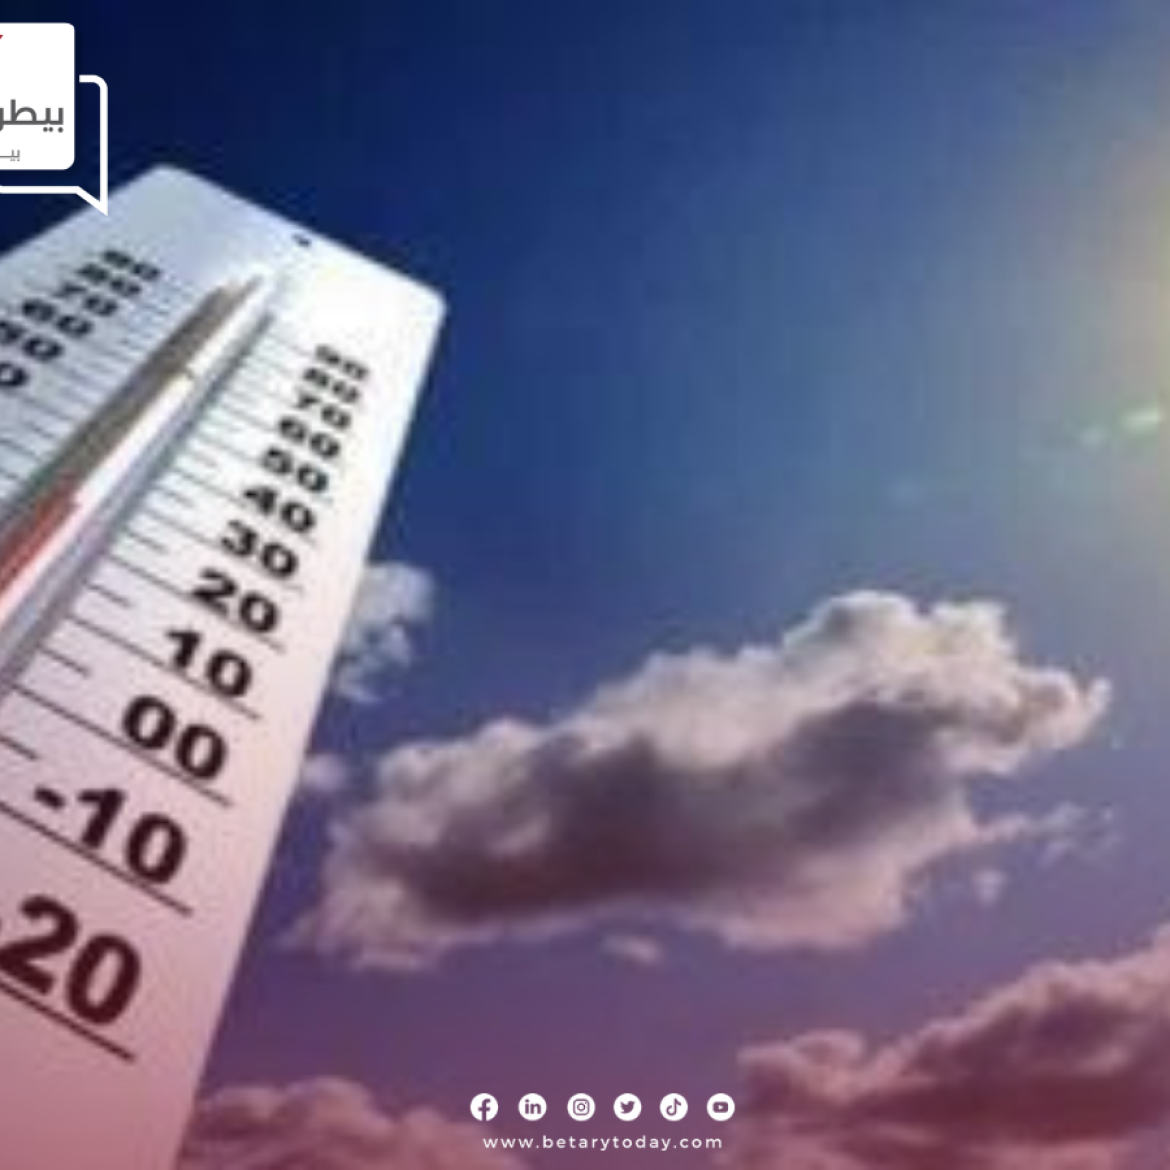 تراجع مؤقت في درجات الحرارة اليوم الأحد 9 يونيو في المحافظات